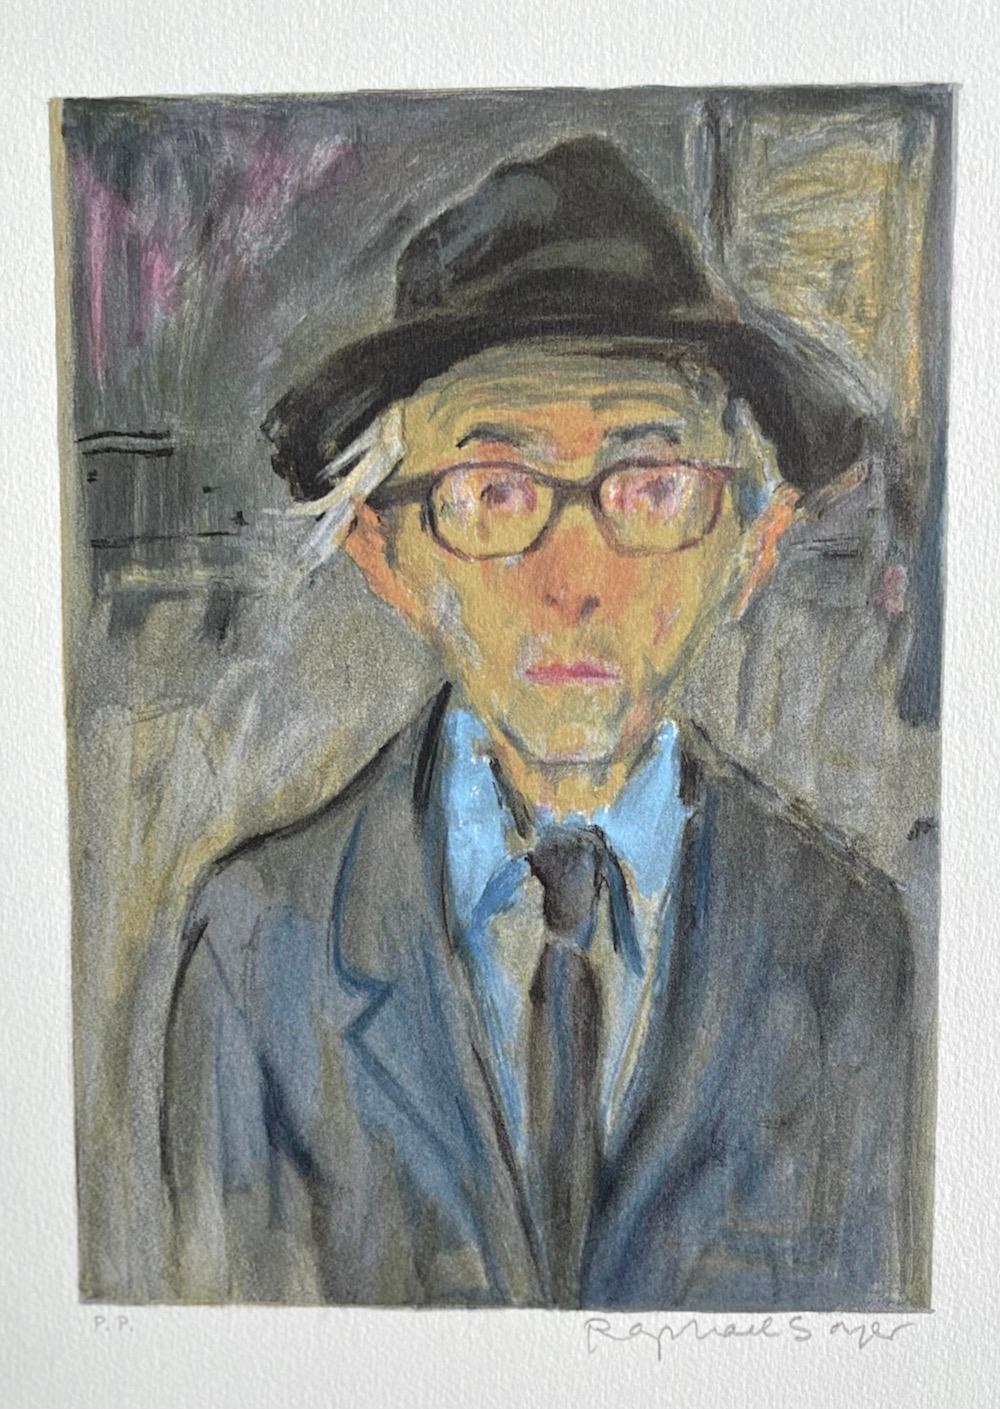 Raphael Soyer Self-Portrait, Signierte Lithographie, Mann mit Hut und Brille, Realismus